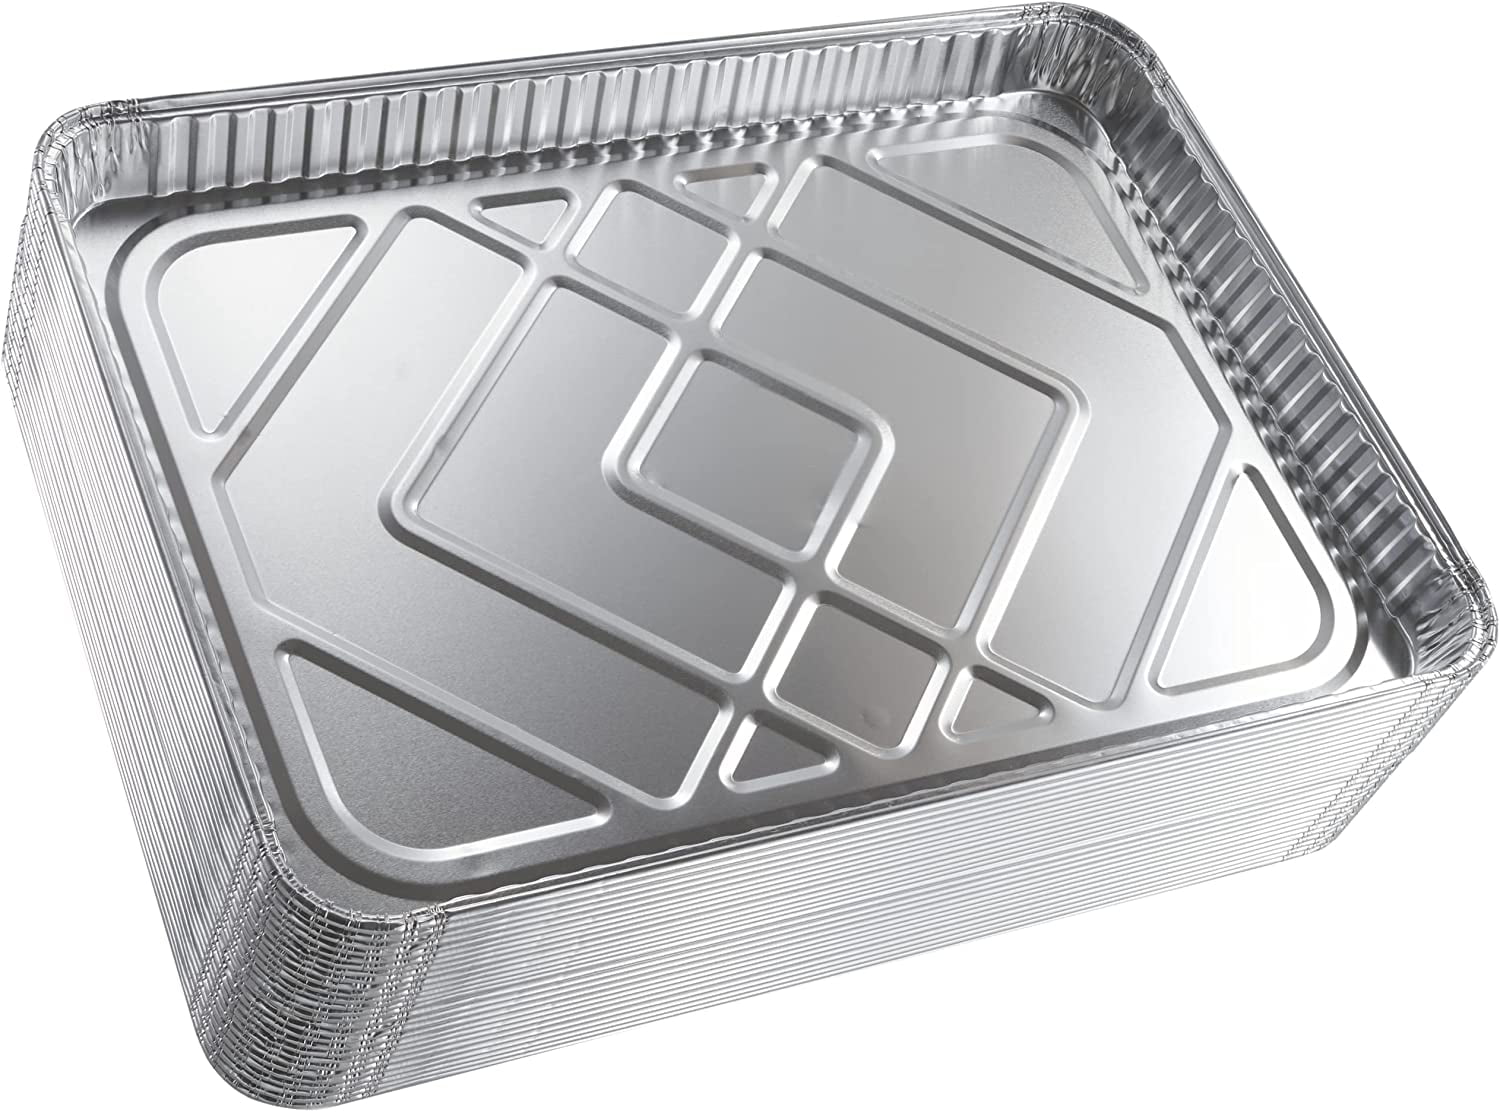 Dobi (15-Pack) Baking Pans - Disposable Aluminum Foil Sheets - 16 x 11 1/4